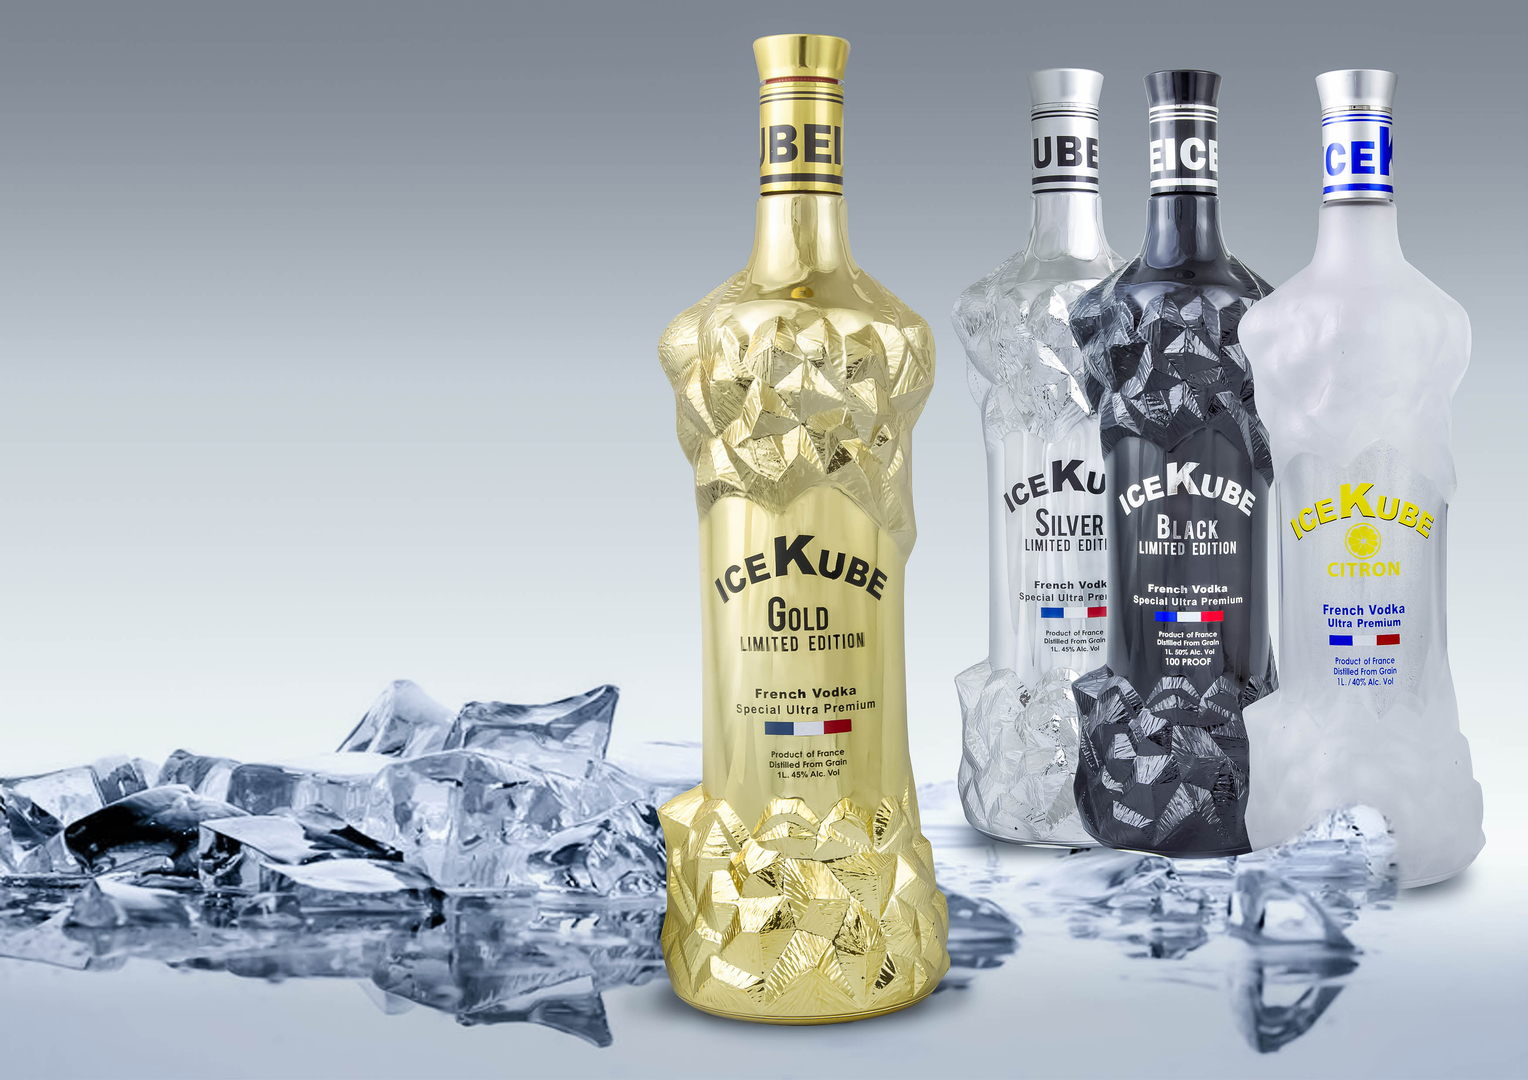 Rượu Vodka Pháp Ice Kube Gold nhập khẩu trực tiếp Hà Nội giá rẻ